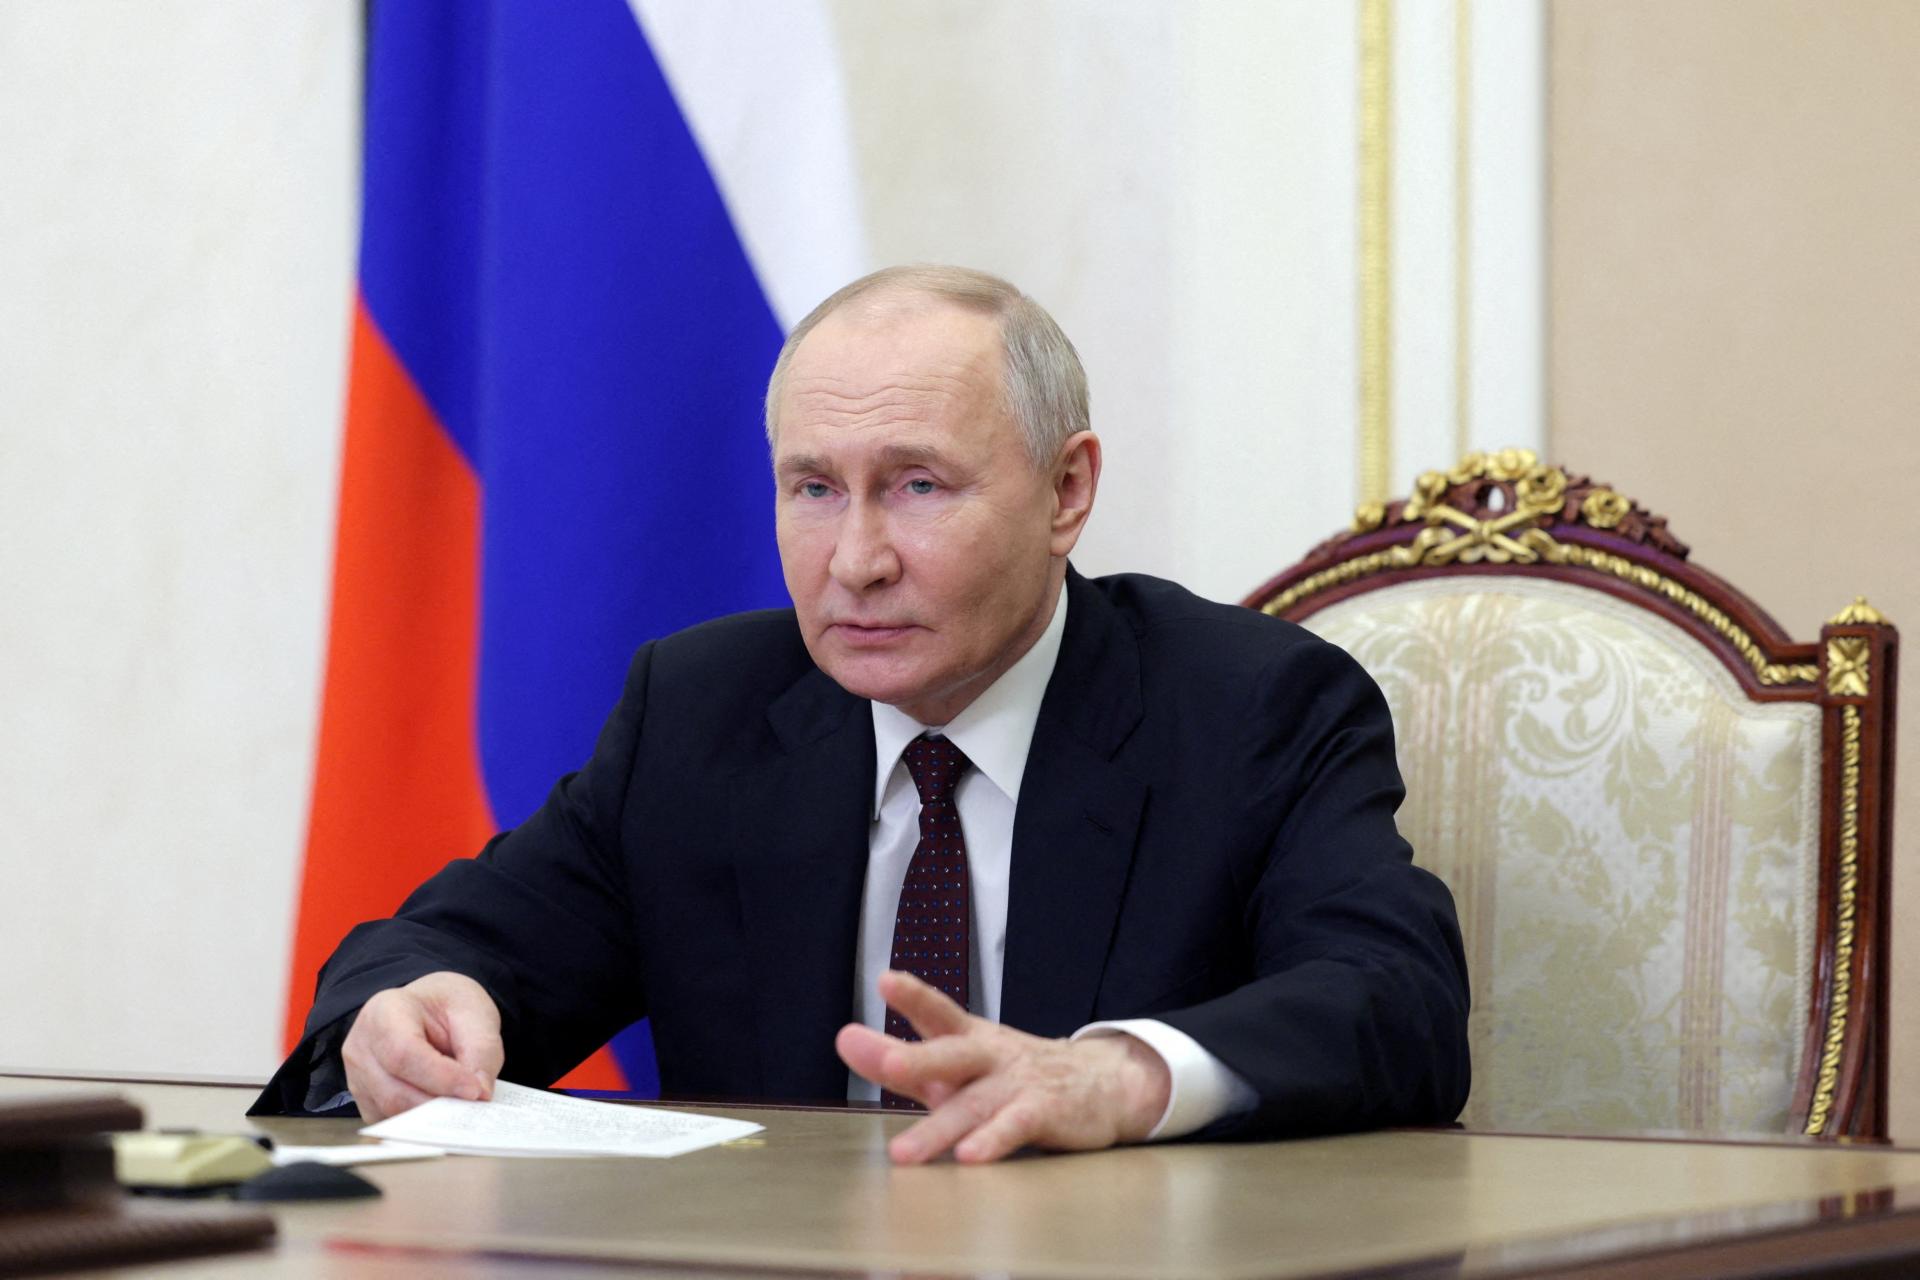 Putina zajtra čaká inaugurácia. Ukrajina vyzvala spojencov, aby ho ako ruskú hlavu štátu neuznávali